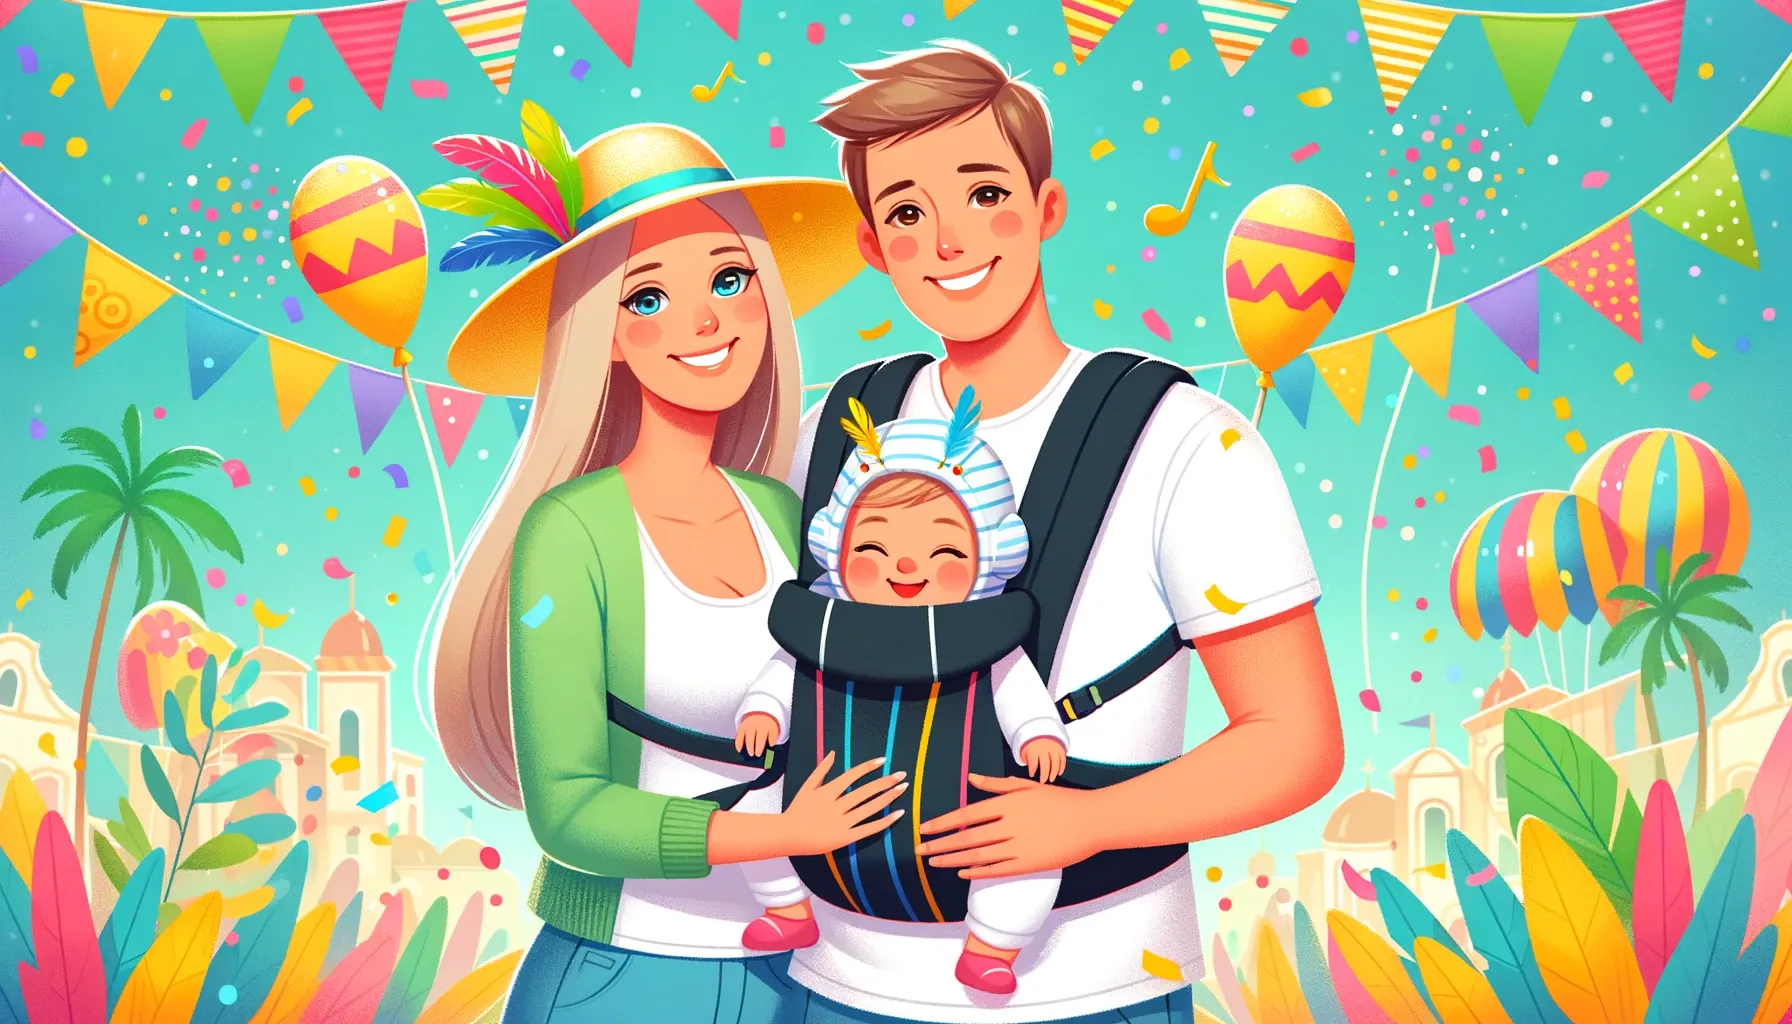 Ilustração alegre de uma família celebrando o Carnaval com seu bebê em um canguru, todos usando proteções como protetores de ouvido para bebês e chapéus contra o sol, em meio a confetes e decorações carnavalescas.